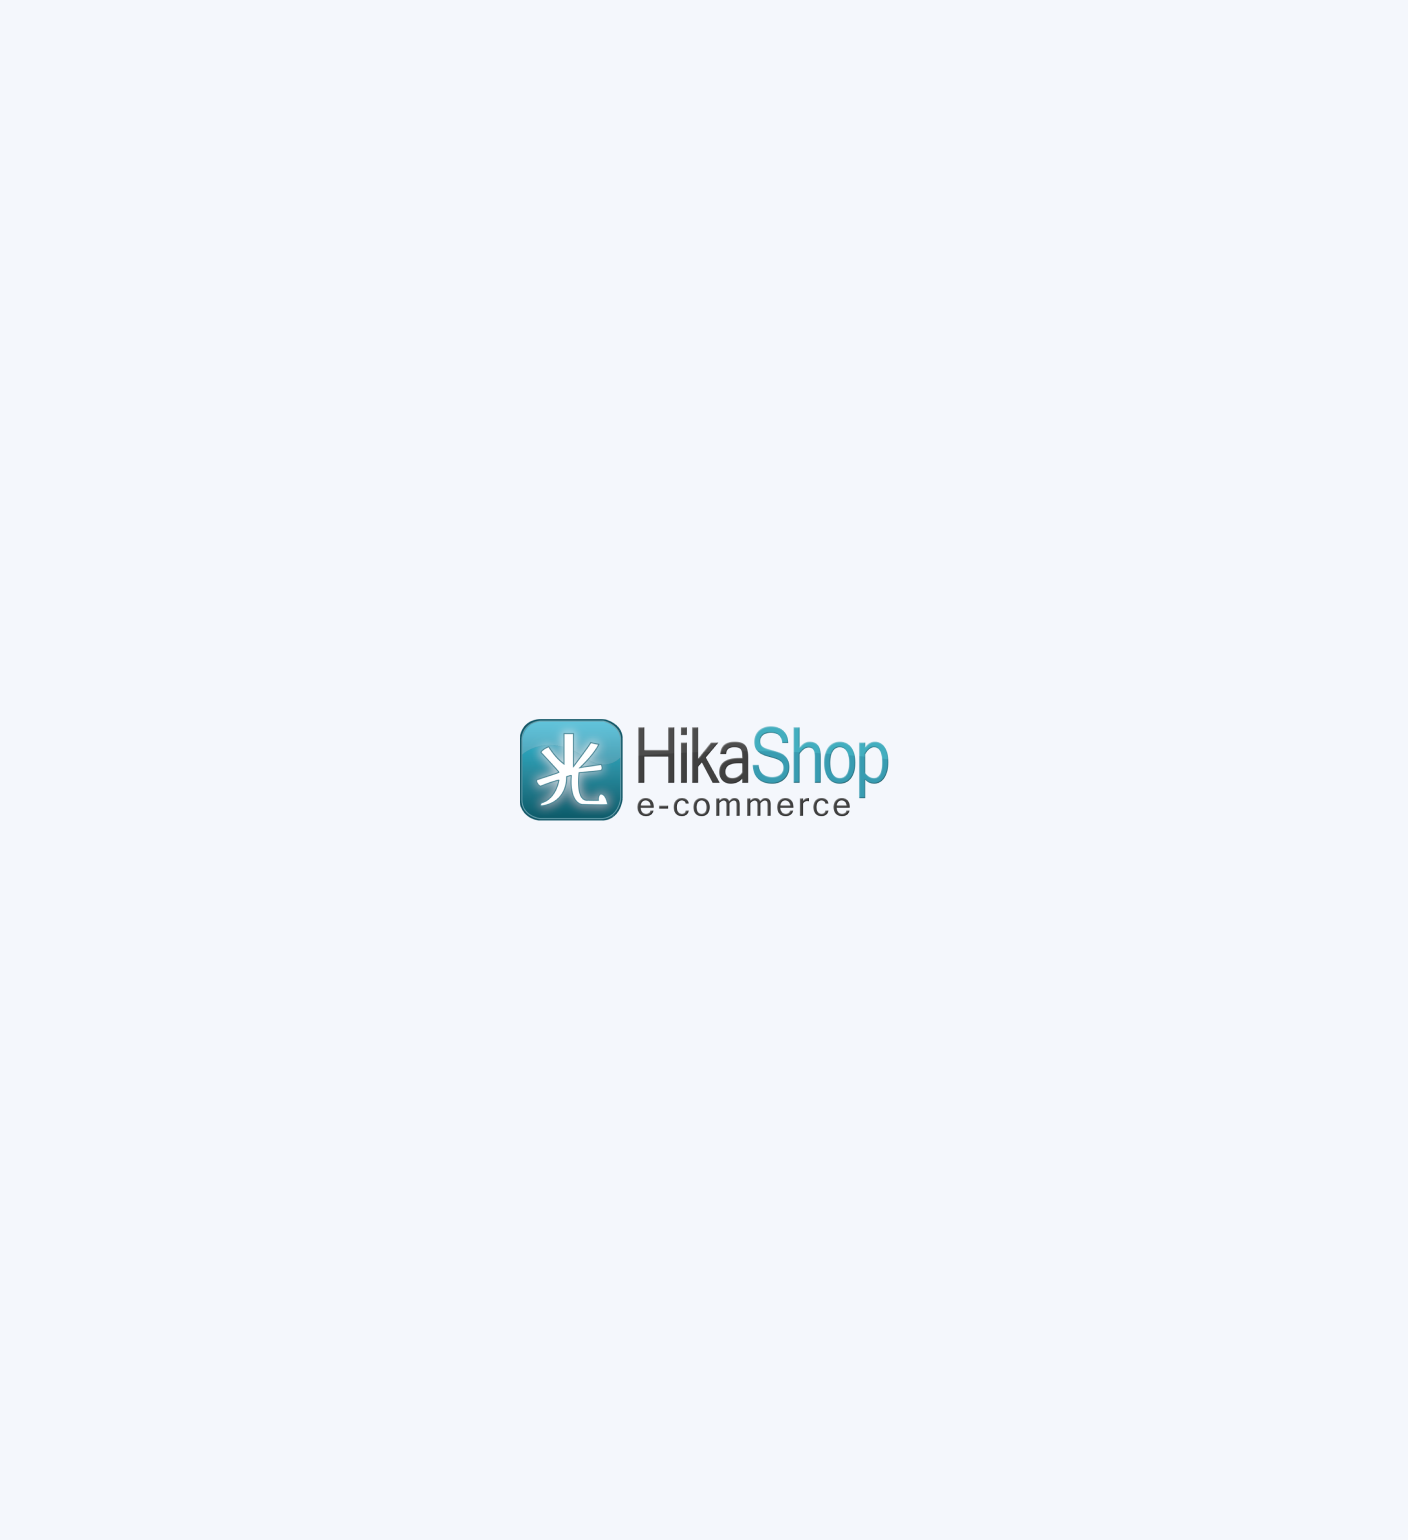 HikaShop-1